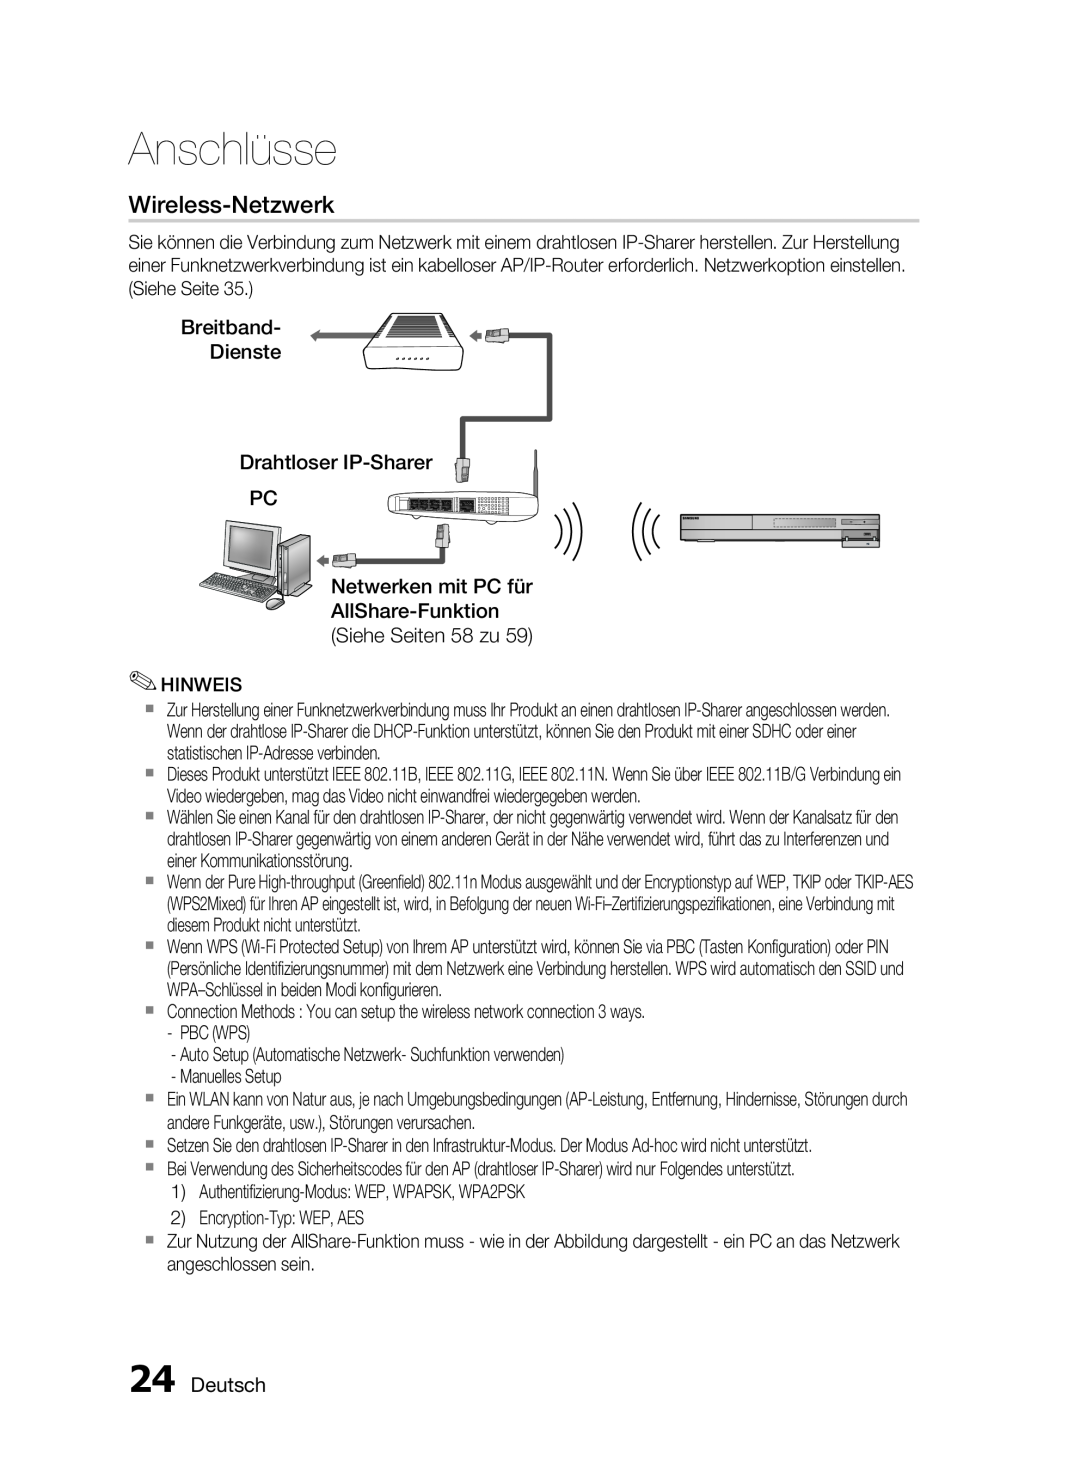 Samsung HT-C6200/XEF manual Wireless-Netzwerk, Breitband Dienste Drahtloser IP-Sharer PC, Deutsch, Anschlüsse 